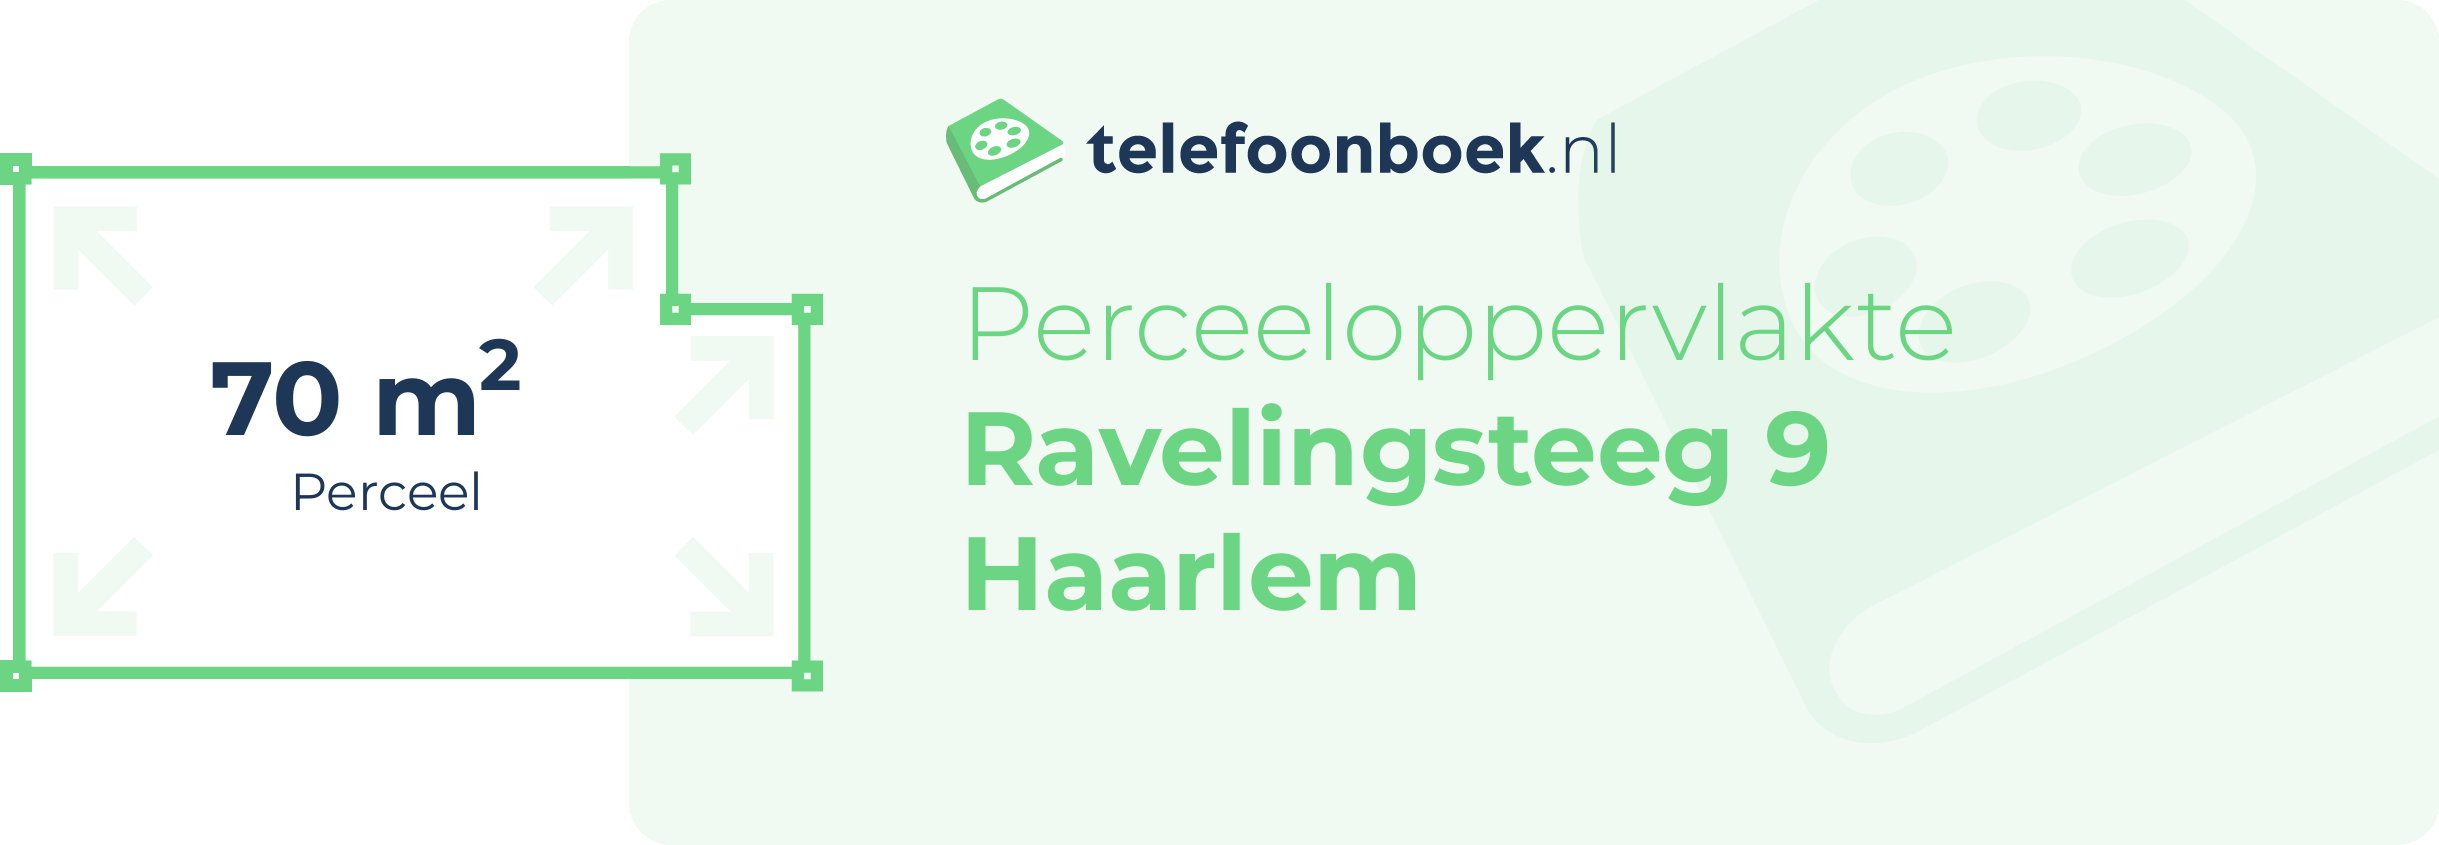 Perceeloppervlakte Ravelingsteeg 9 Haarlem